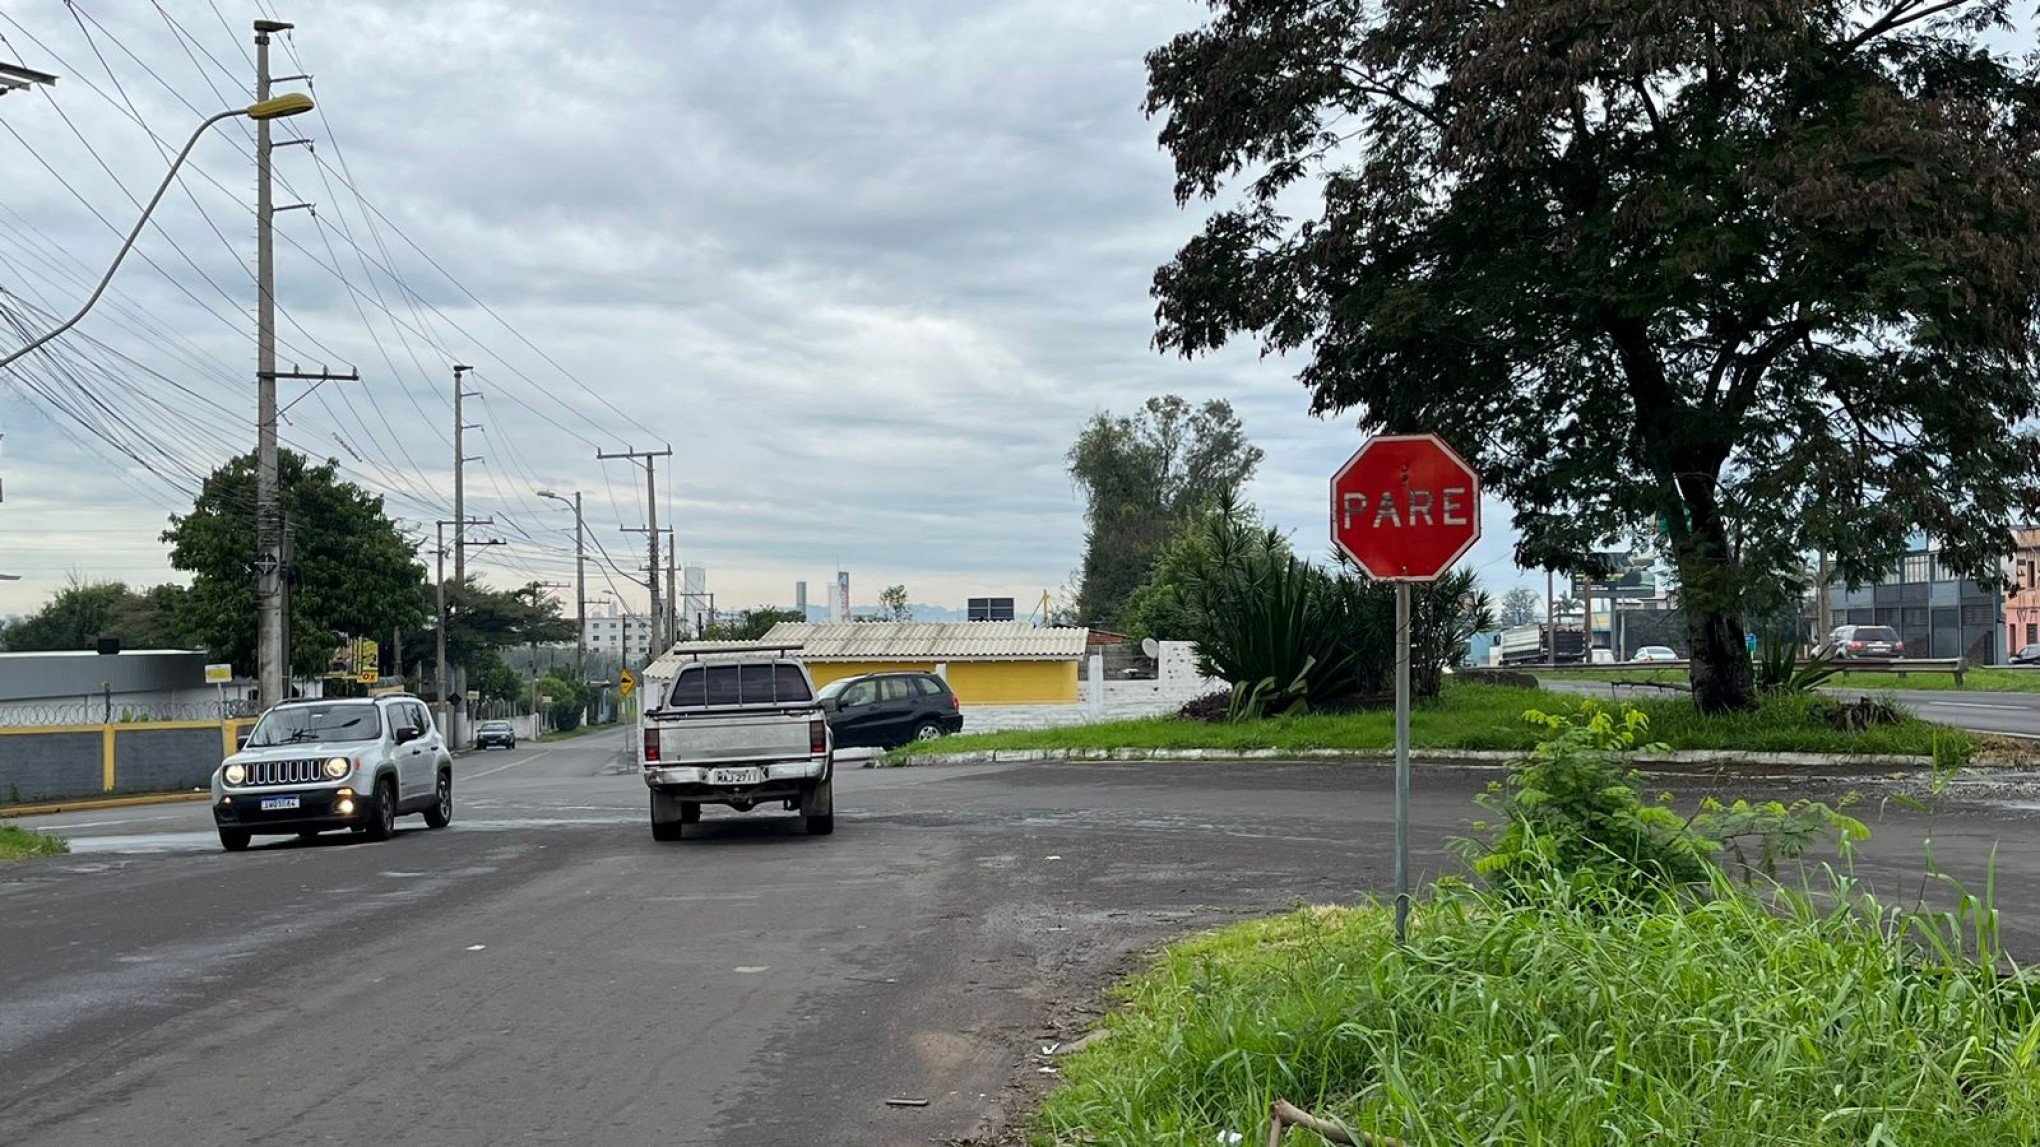 "Vai quem acelerar primeiro": Moradores reclamam de trecho caótico no entroncamento da BR-116 com a Rua São Leopoldo